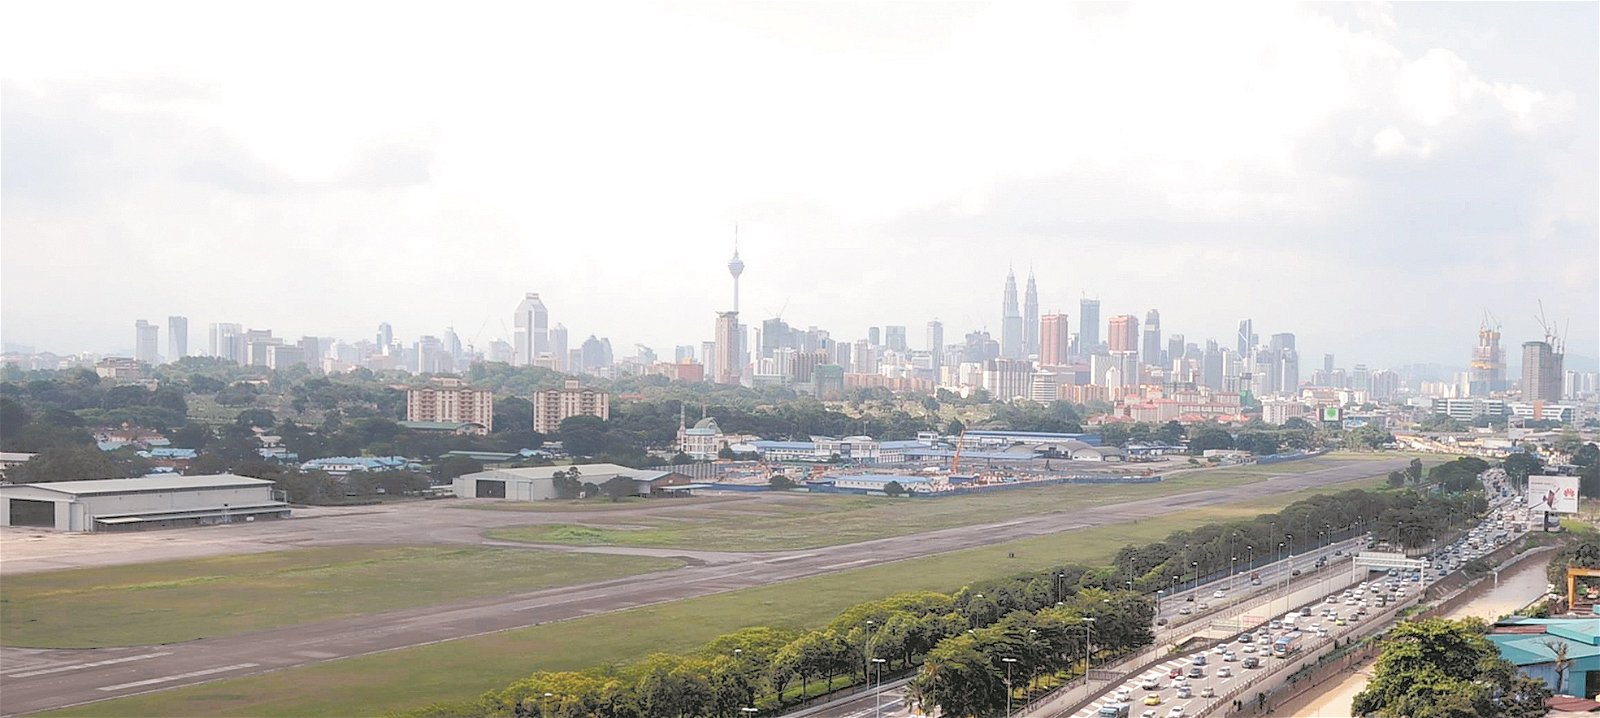 大马城坐落在吉隆坡新街场，总占地486亩，发展总值达2000亿令吉，大马城将成为吉隆坡公共交通系统的中枢，除了连接捷运2线和捷运3线，还有电动火车、吉隆坡国际机场快铁（ERL）和隆新高铁，及12条高速大道都可通往该城，为了让大马城顺利开展，位于发展地段的空军基地也需要搬迁。不过，如今大马城发展大计因为股权交易告吹蒙上阴影。